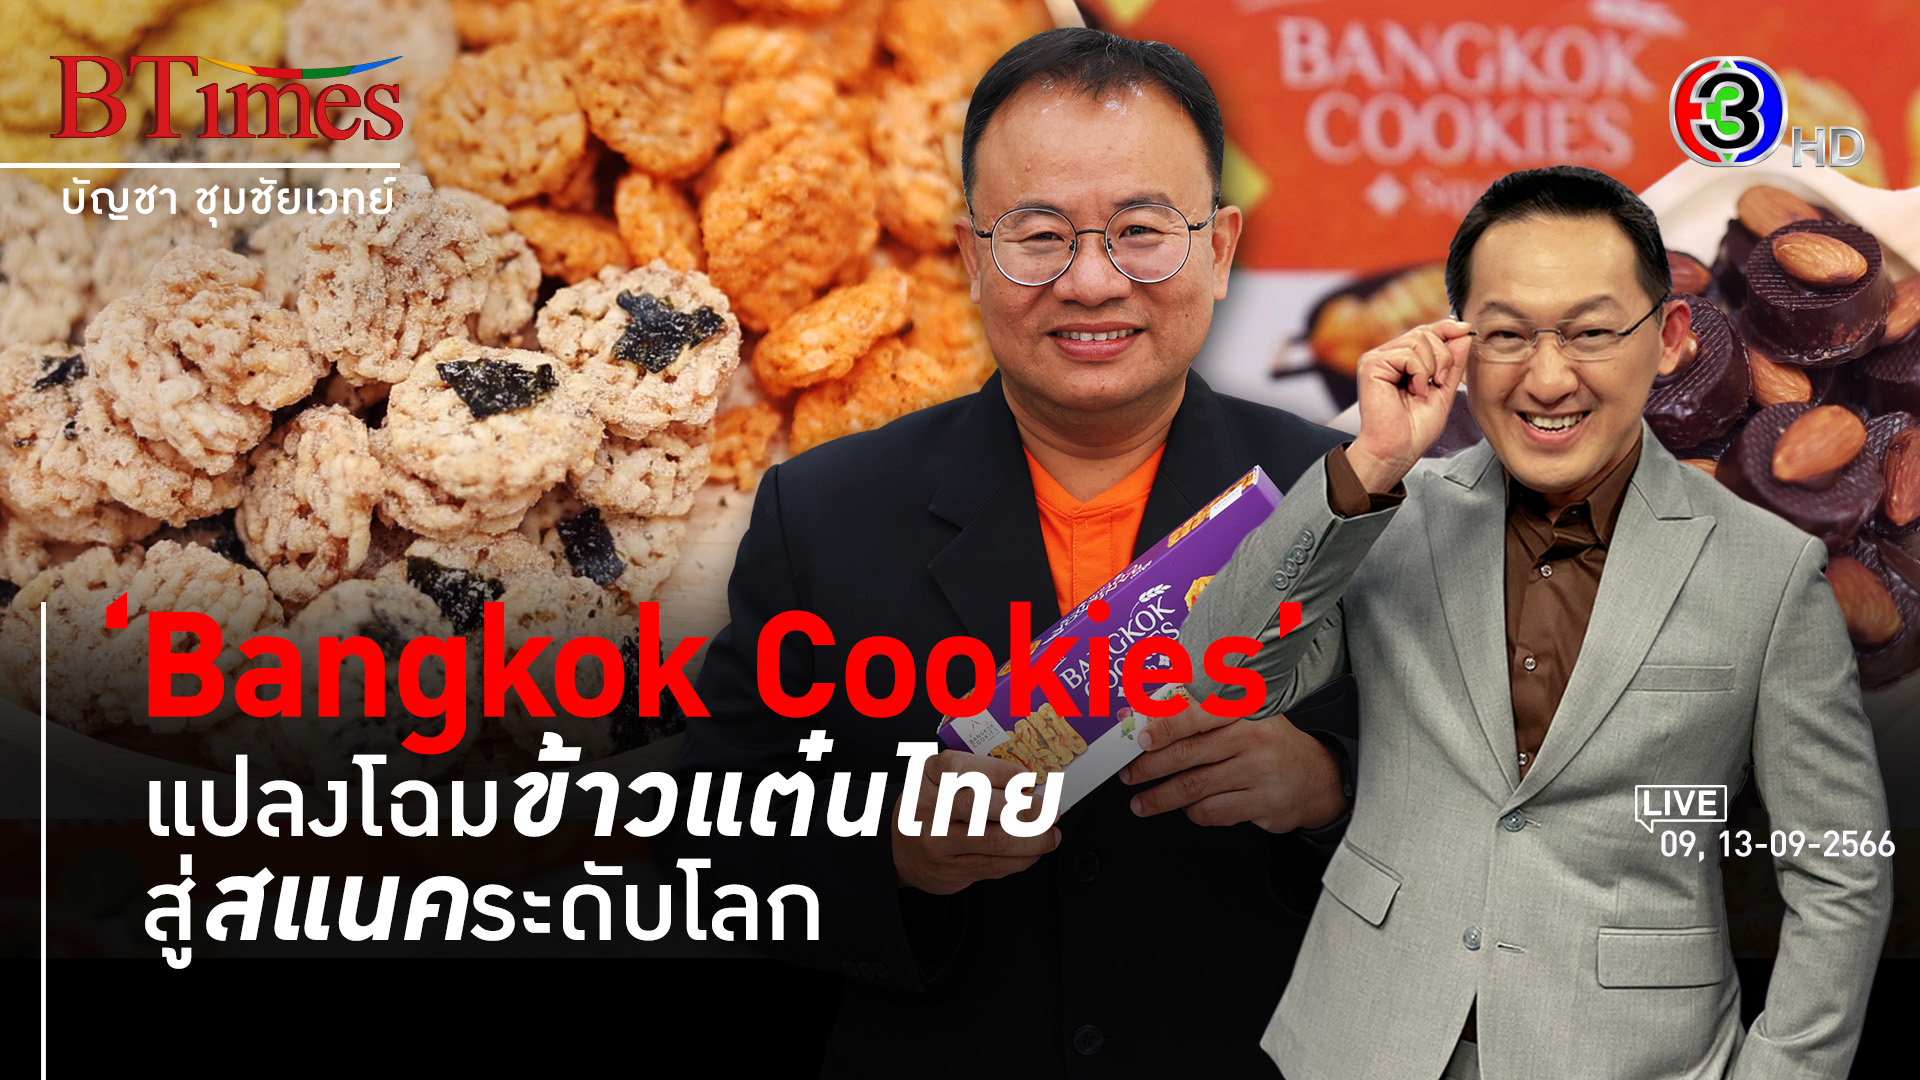 ‘Bangkok Cookies’ สร้างมูลค่าเพิ่มข้าวไทยบนตลาดสแนคโลก l 9, 13 ก.ย. 66 FULL l BTimes